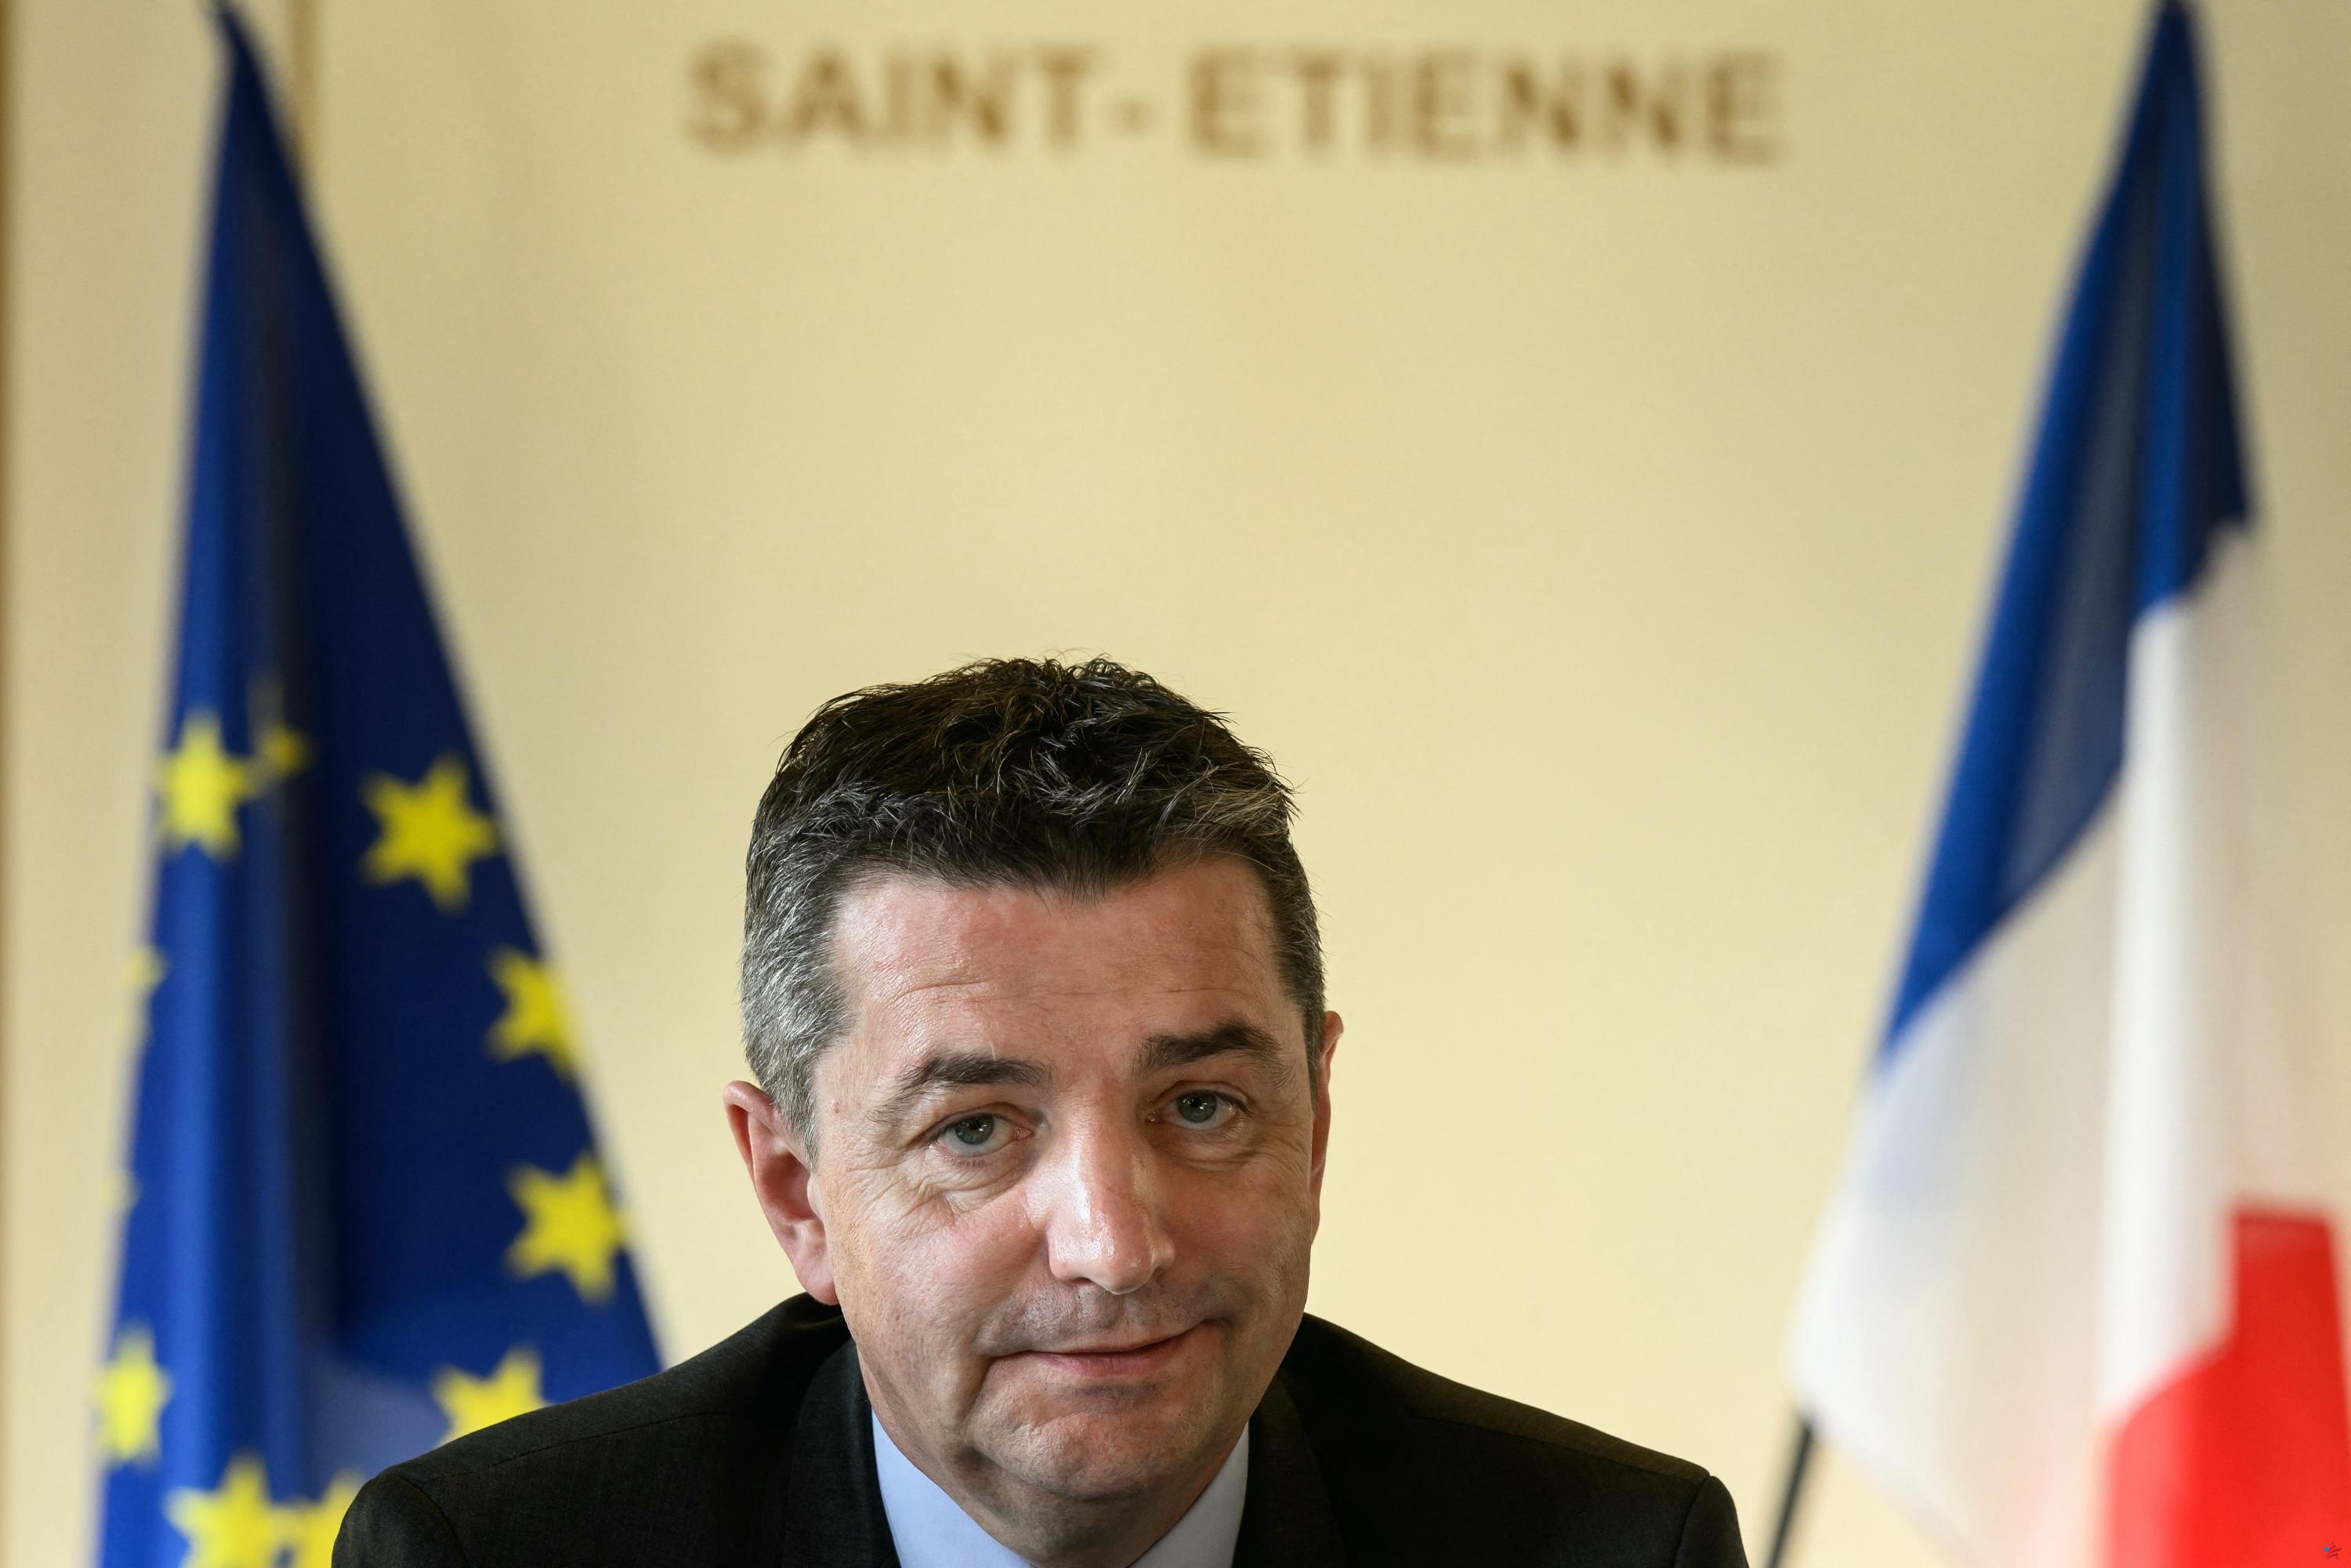 Asunto del video sexual: el funcionario electo de Saint-Etienne que supuestamente posó la cámara señala a su vez a Gaël Perdriau